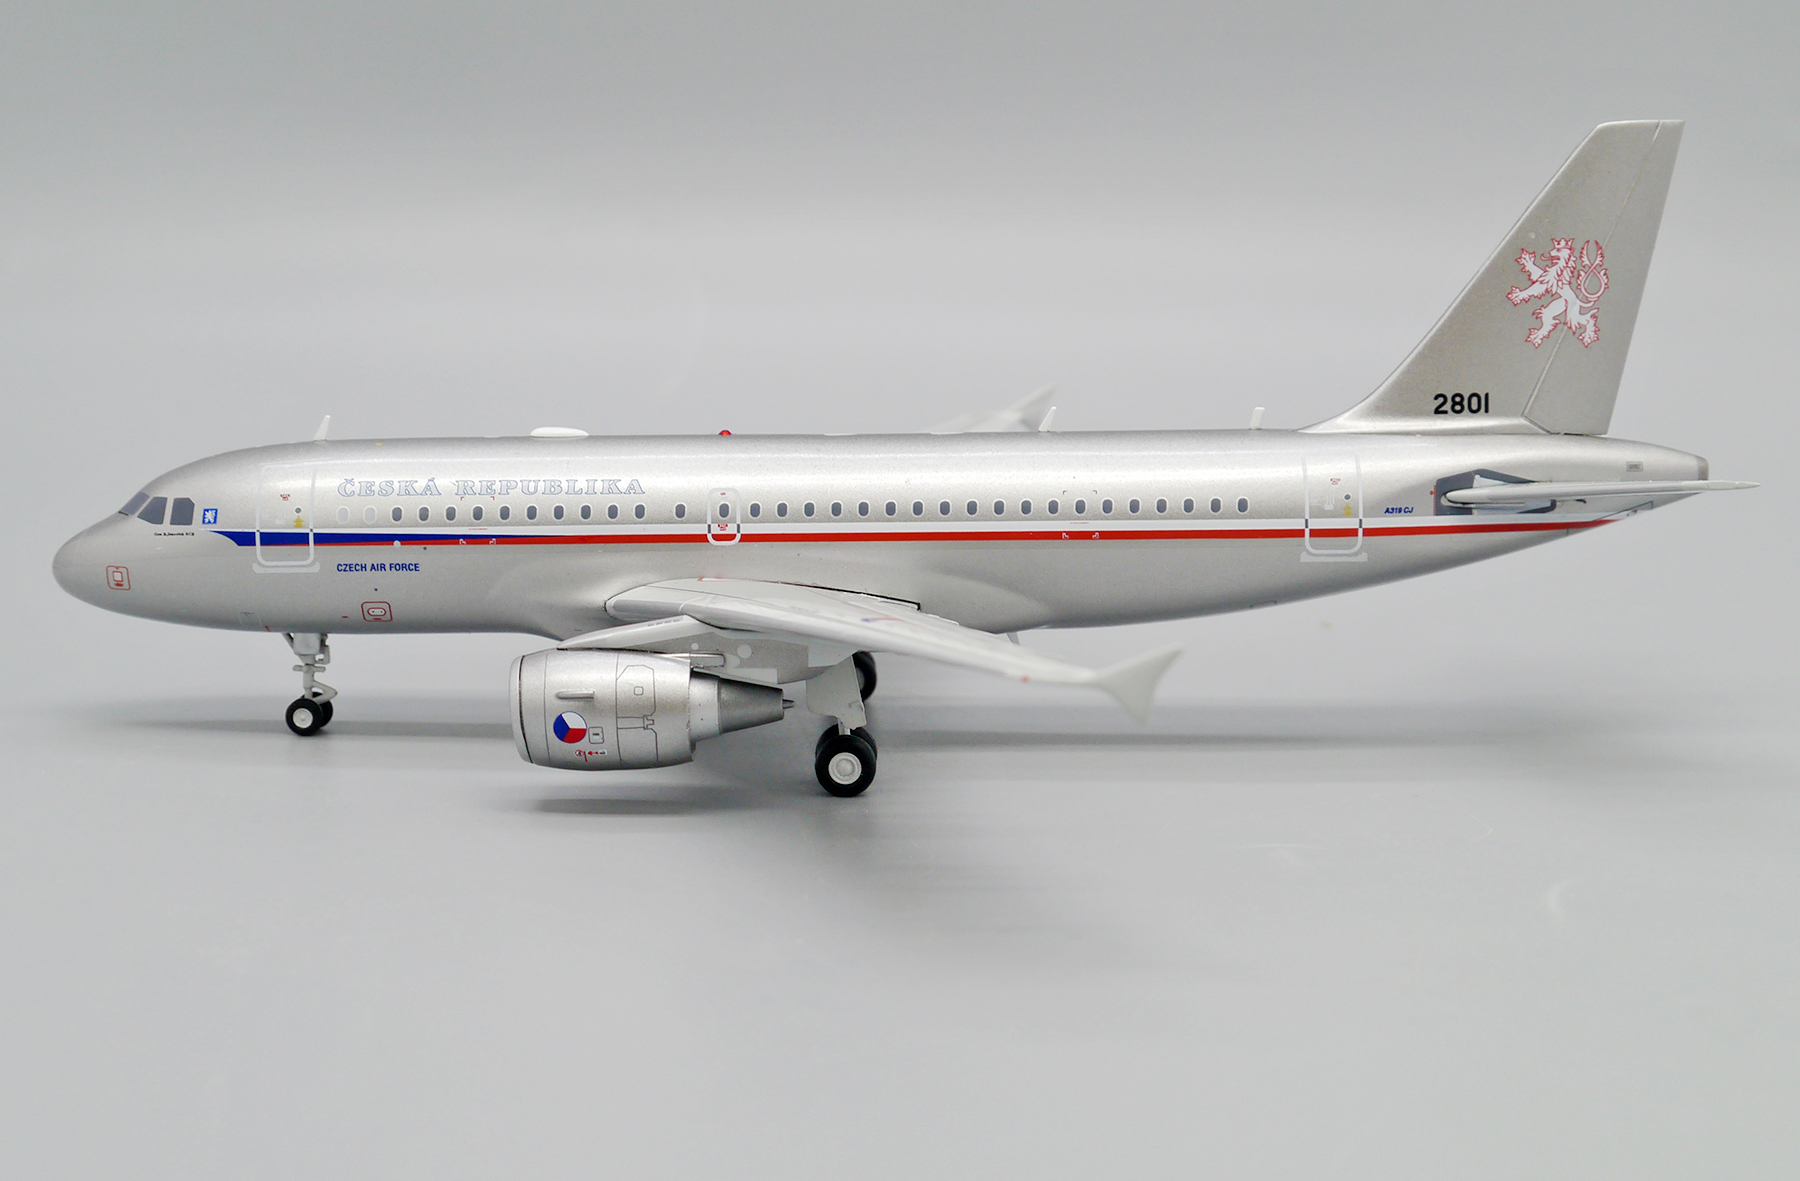 NG Models 1:400 Boeing 737-800BCF: WestJet Cargo